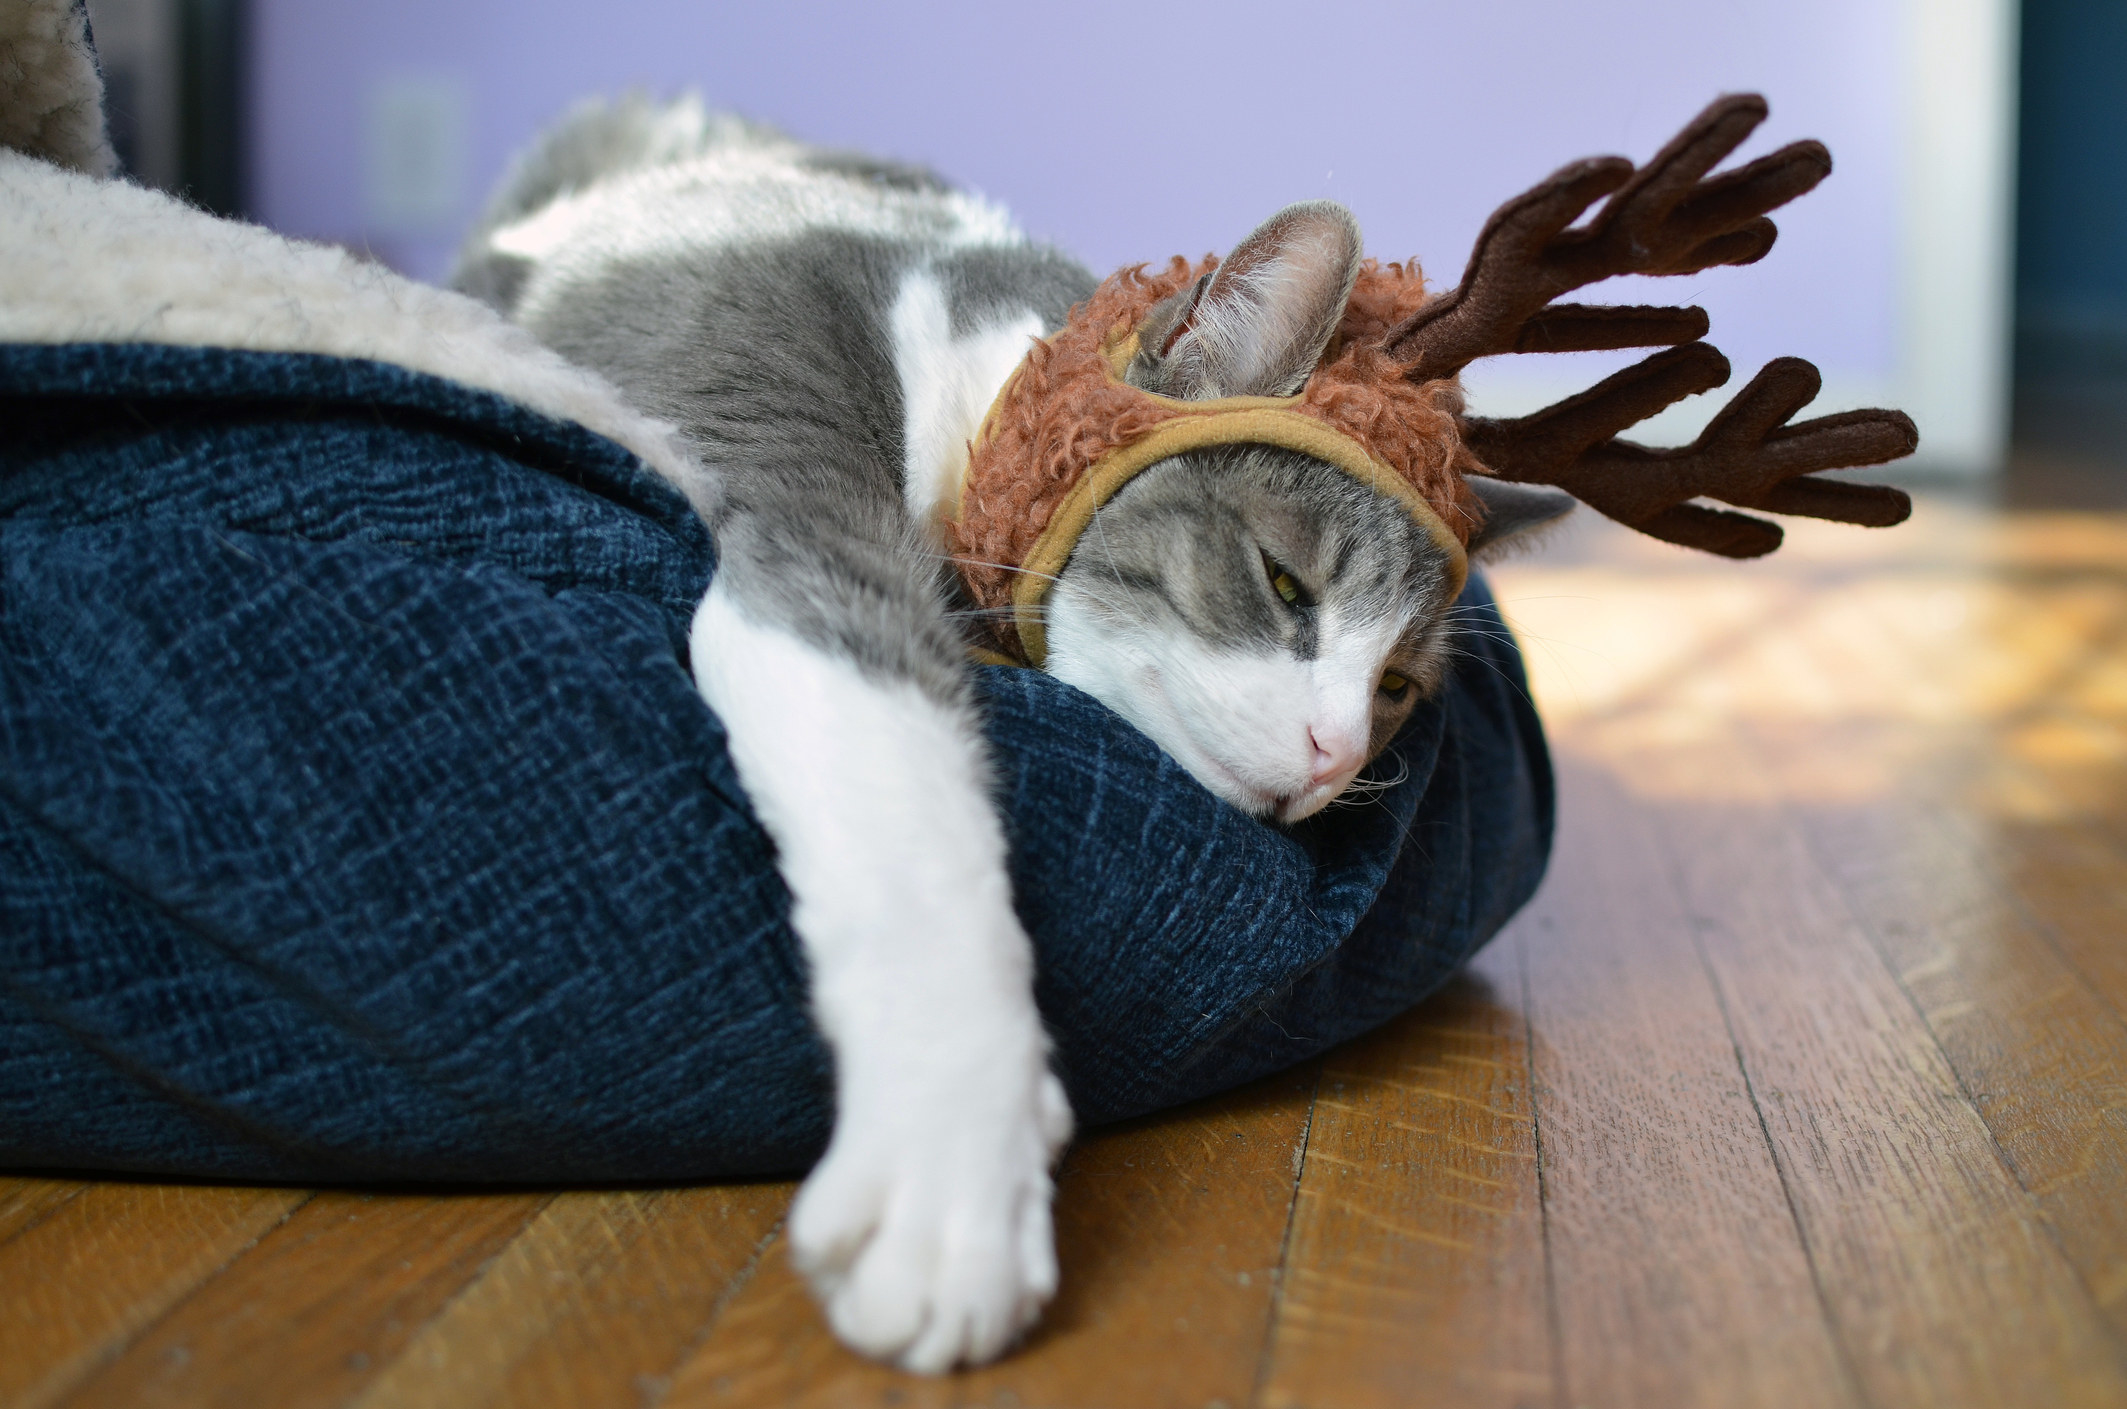 cat wearing reindeer antlers asleep